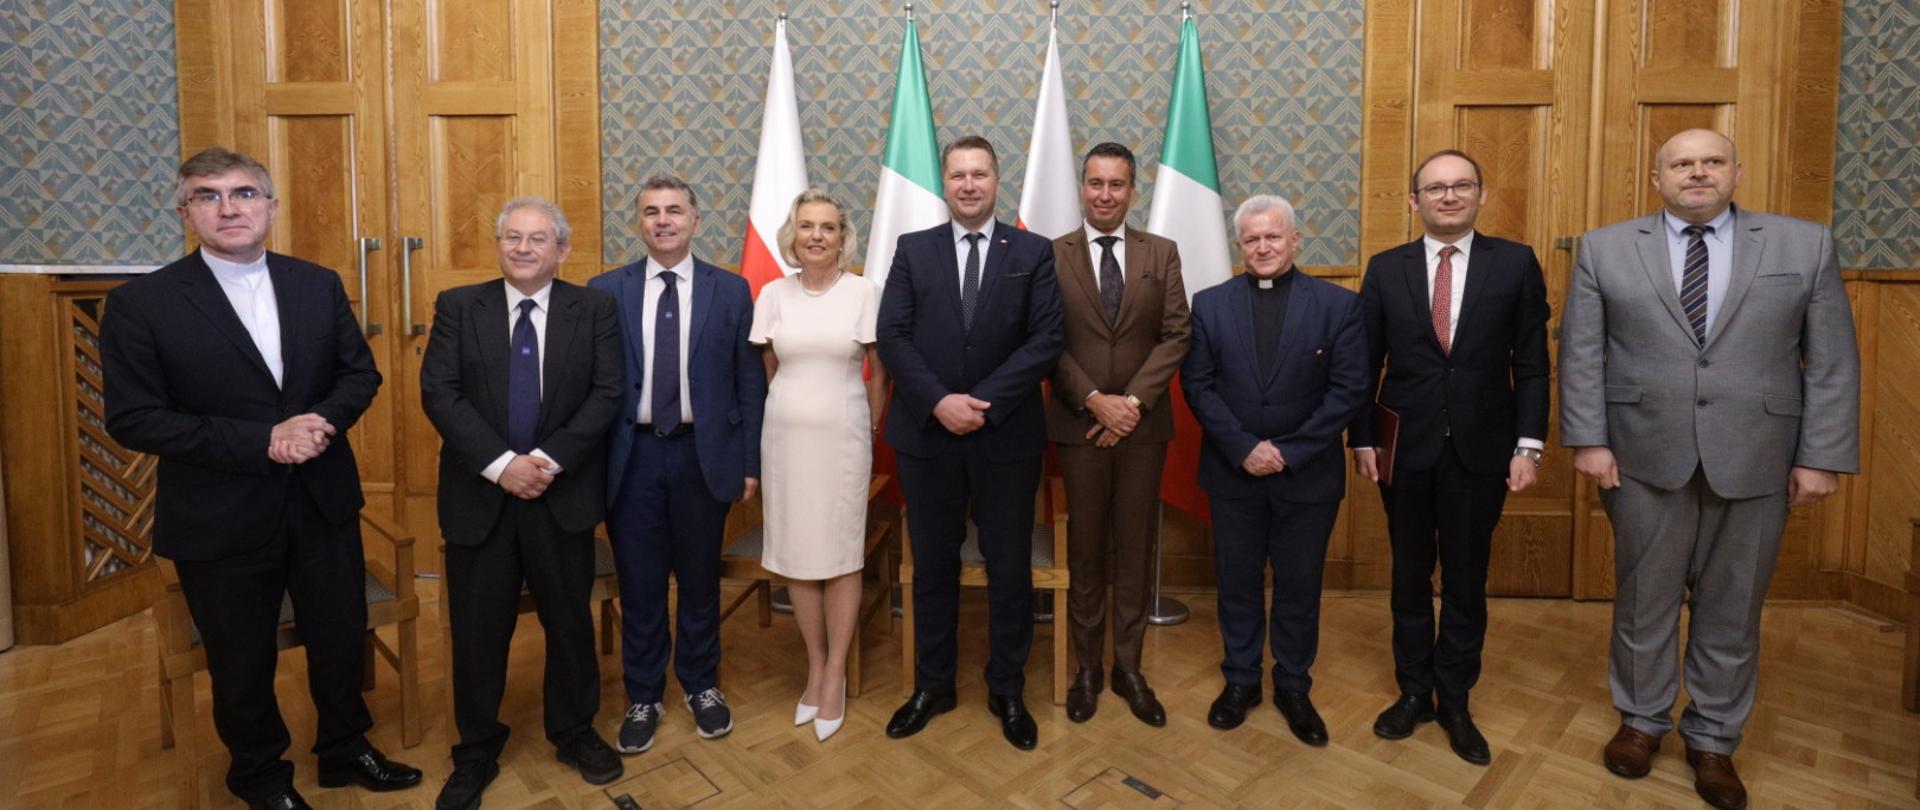 Zdjęcie zbiorowe uczestników spotkania, stoją w rzędzie pod ścianą, za nimi polskie i włoskie flagi.